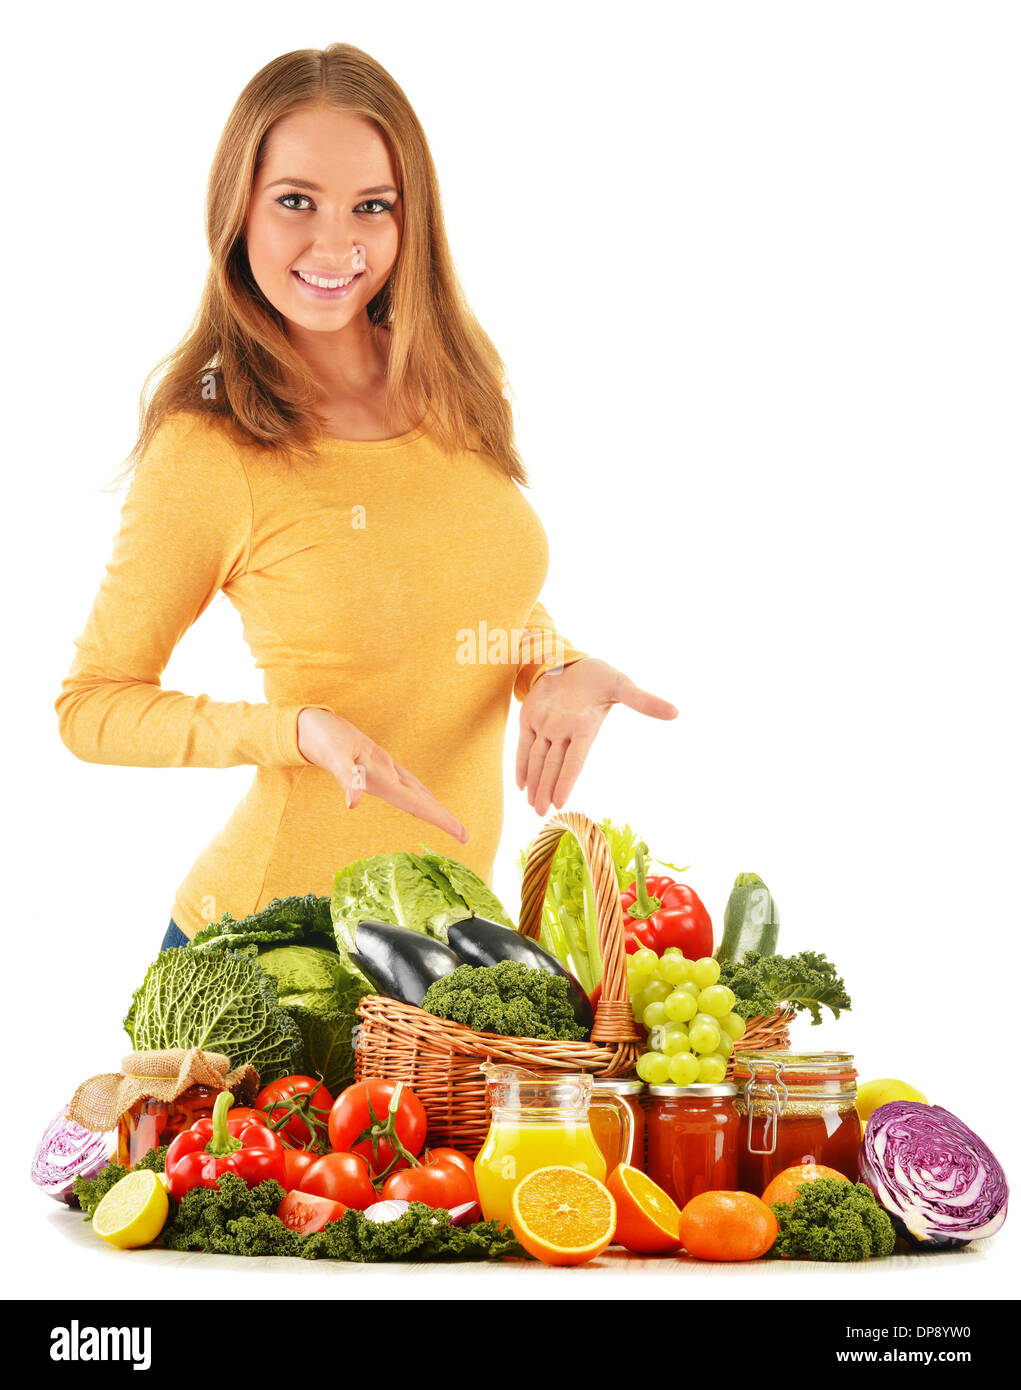 Junge Frau mit sortierten Supermarkt-Produkte, die isoliert auf weißem Hintergrund Stockfoto